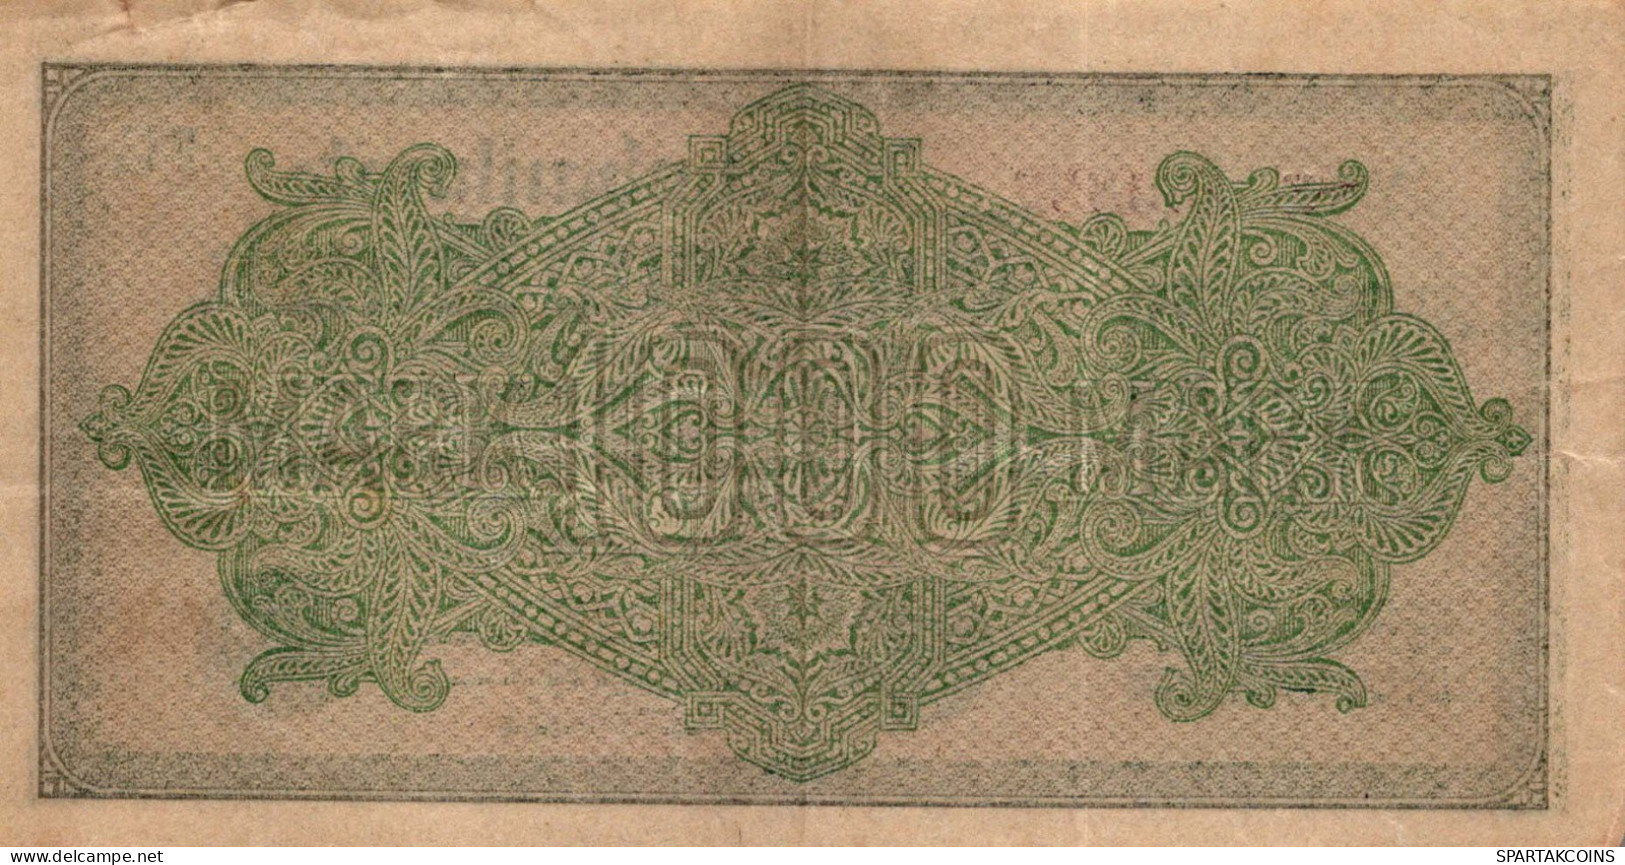 1000 MARK 1922 Stadt BERLIN DEUTSCHLAND Papiergeld Banknote #PL431 - Lokale Ausgaben